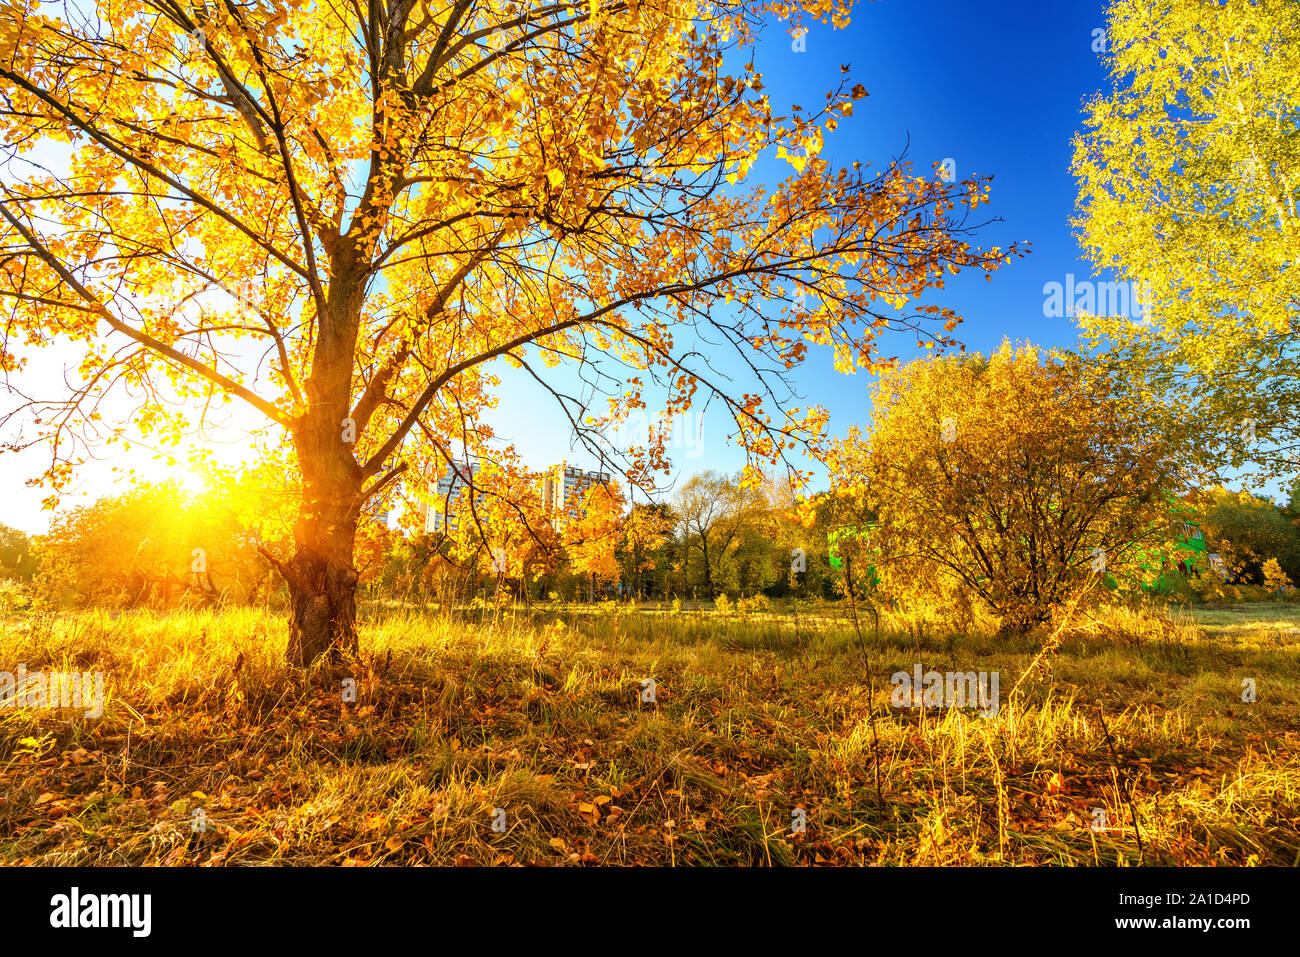 Bright tree in sunny autumn park Stock Photo